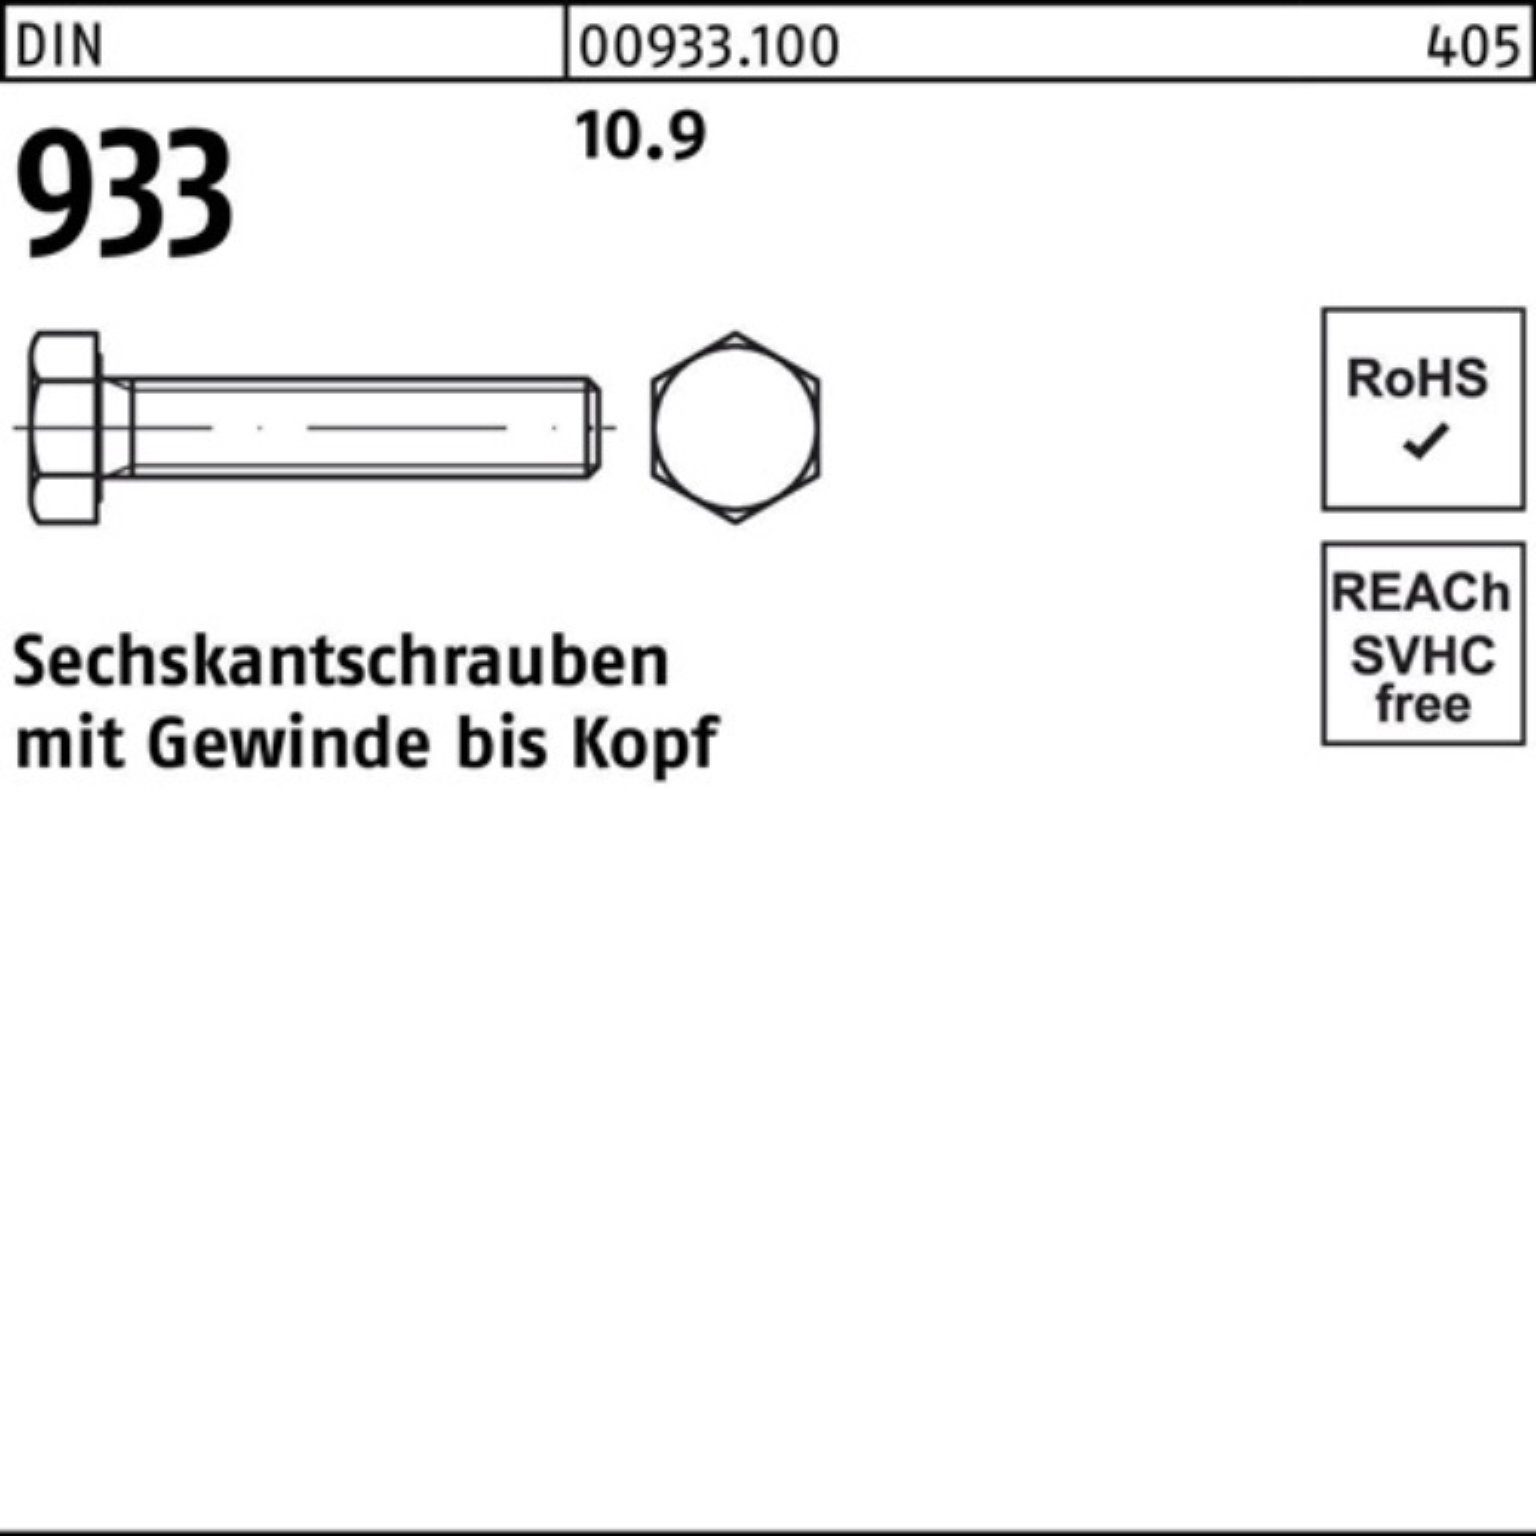 Reyher Sechskantschraube 10.9 Stück M12x 100er VG 933 50 Sechskantschraube 93 Pack DIN DIN 100